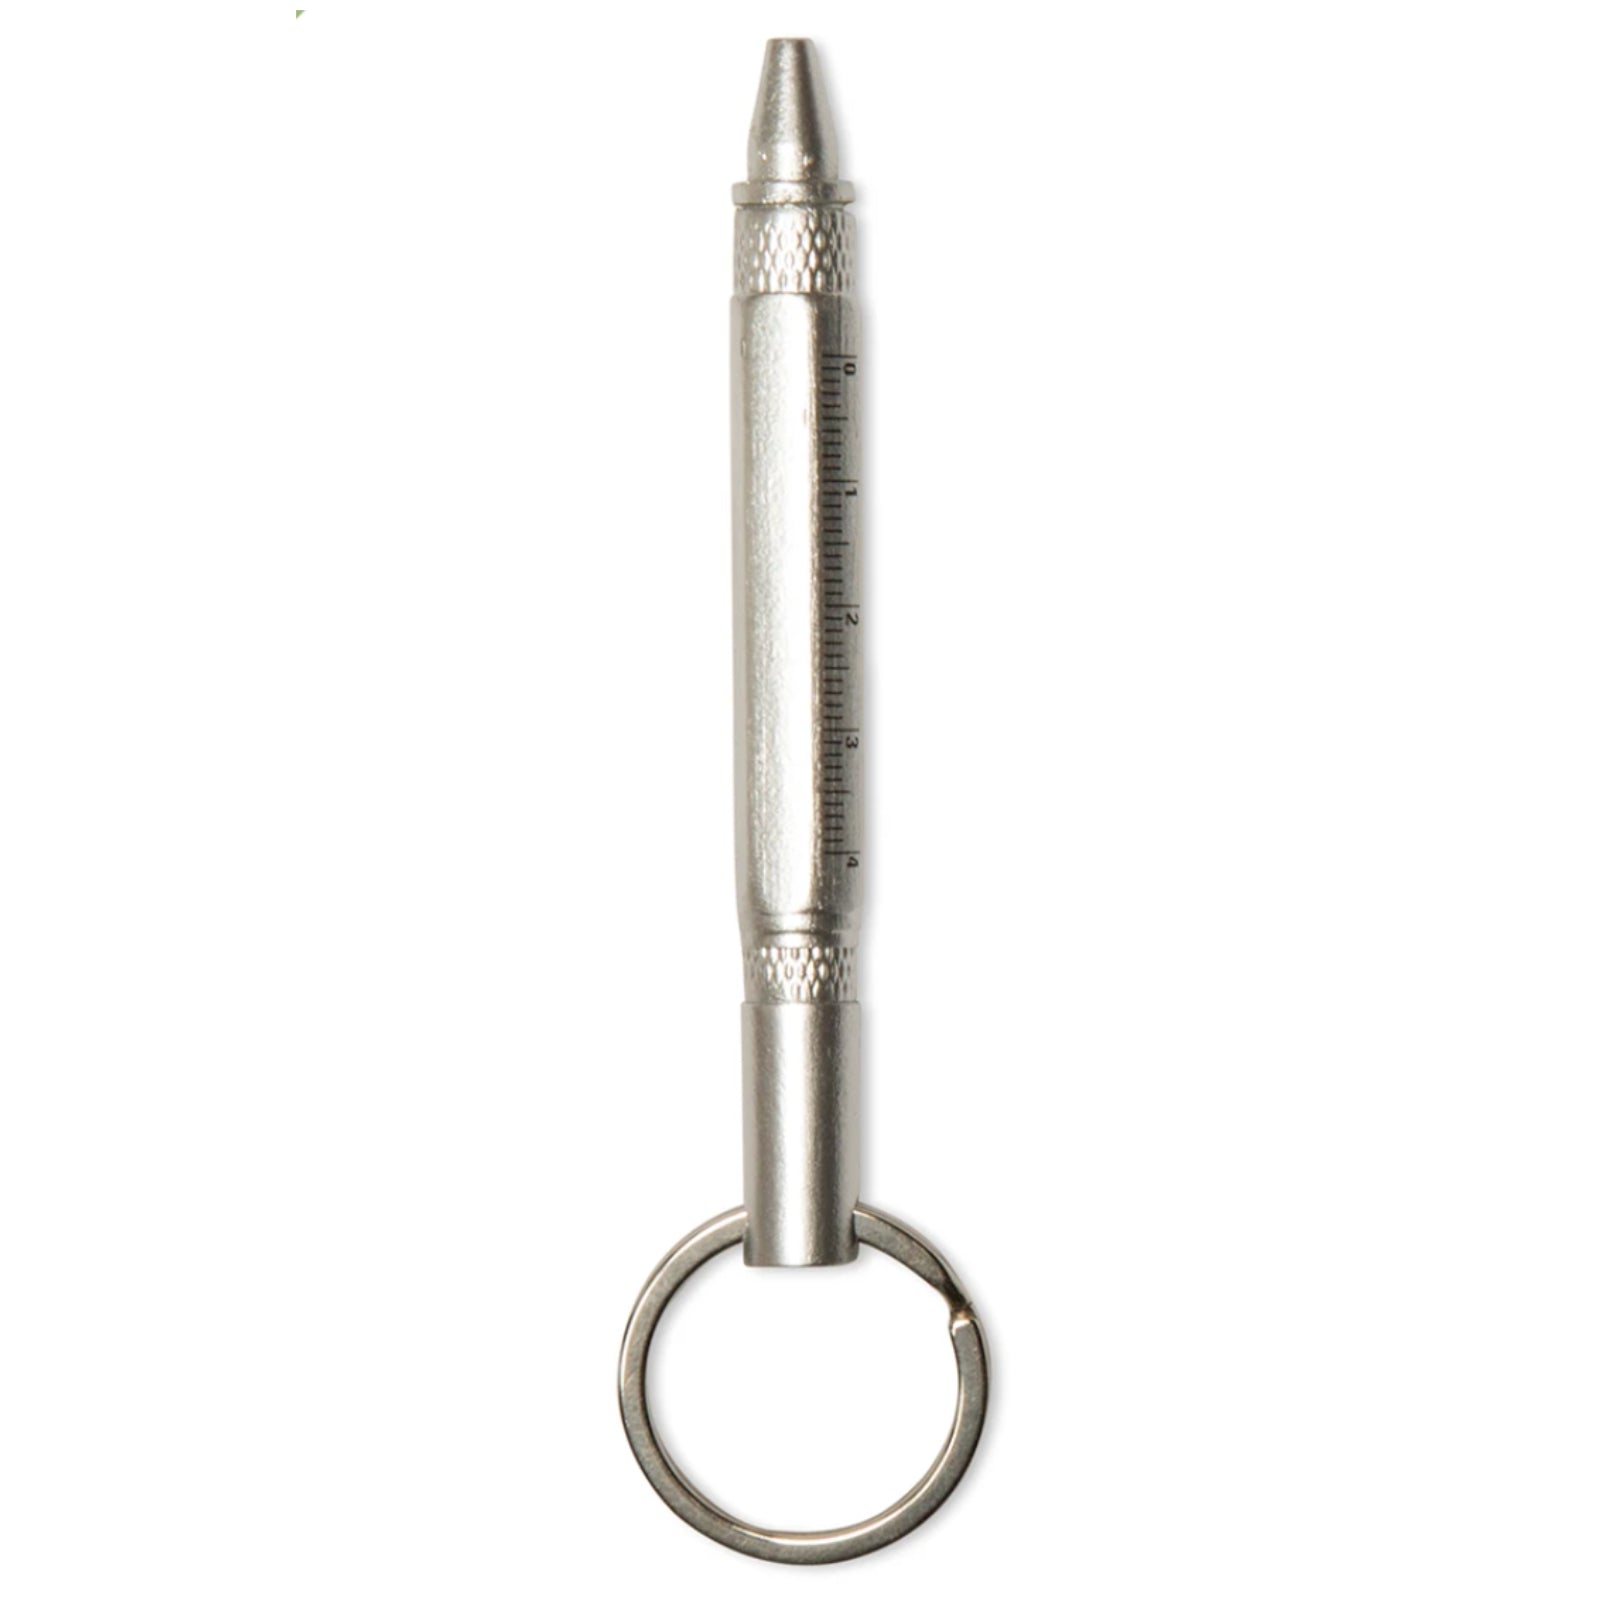 Kikkerland Mini Multi Tool Pen – Single Pen